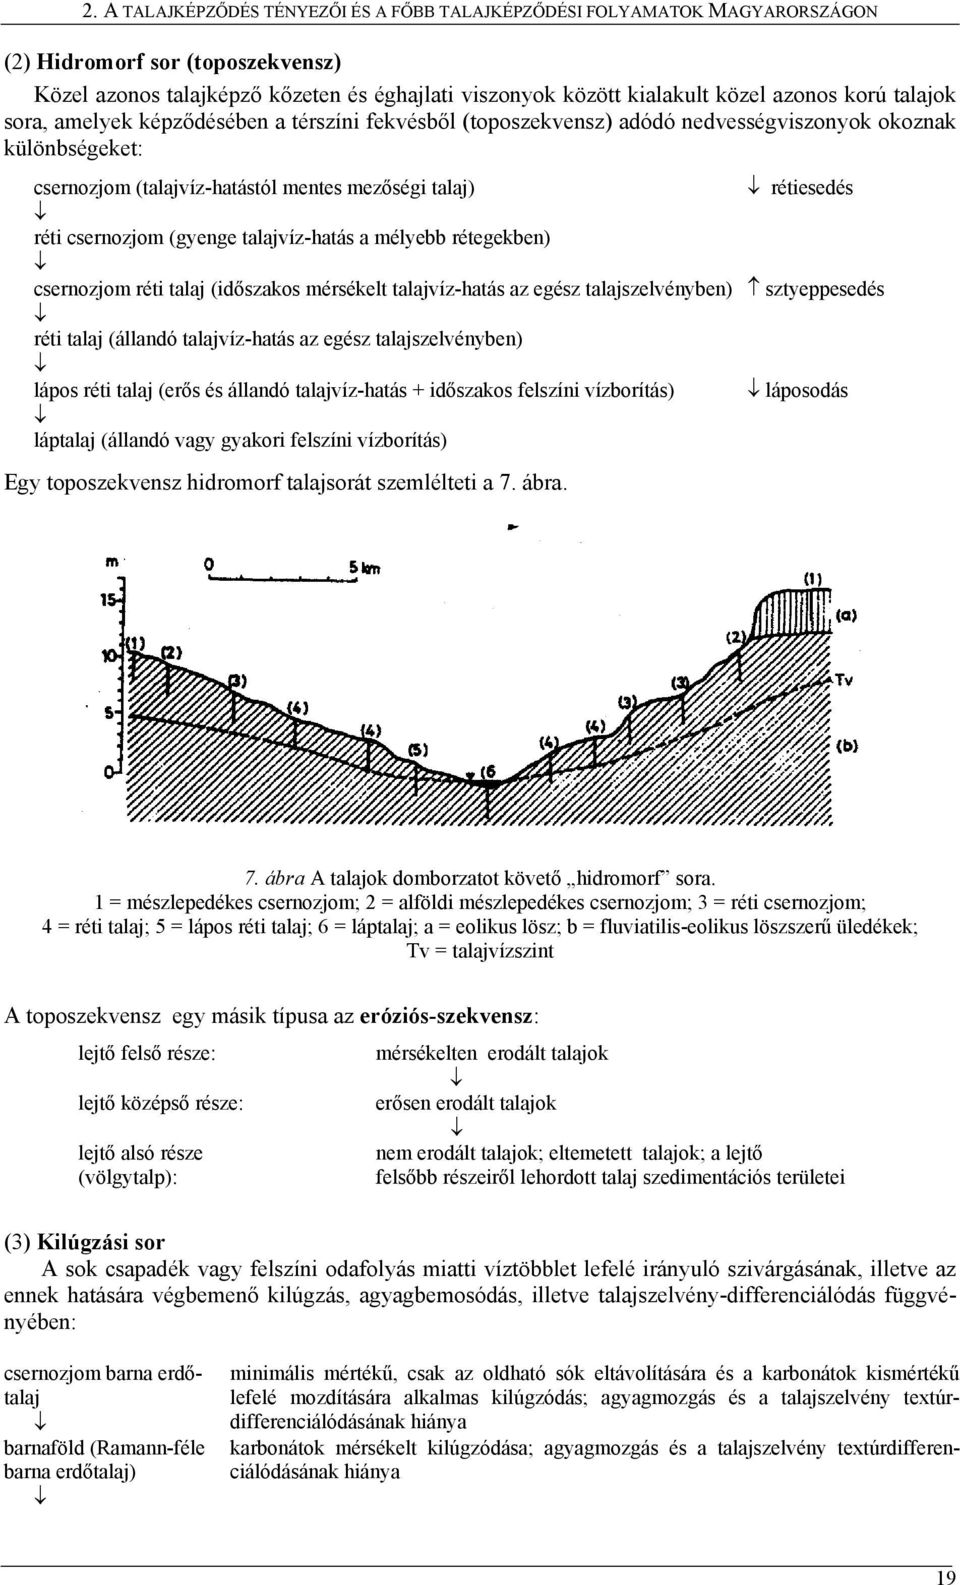 csernozjom (gyenge talajvíz-hatás a mélyebb rétegekben) csernozjom réti talaj (időszakos mérsékelt talajvíz-hatás az egész talajszelvényben) sztyeppesedés réti talaj (állandó talajvíz-hatás az egész